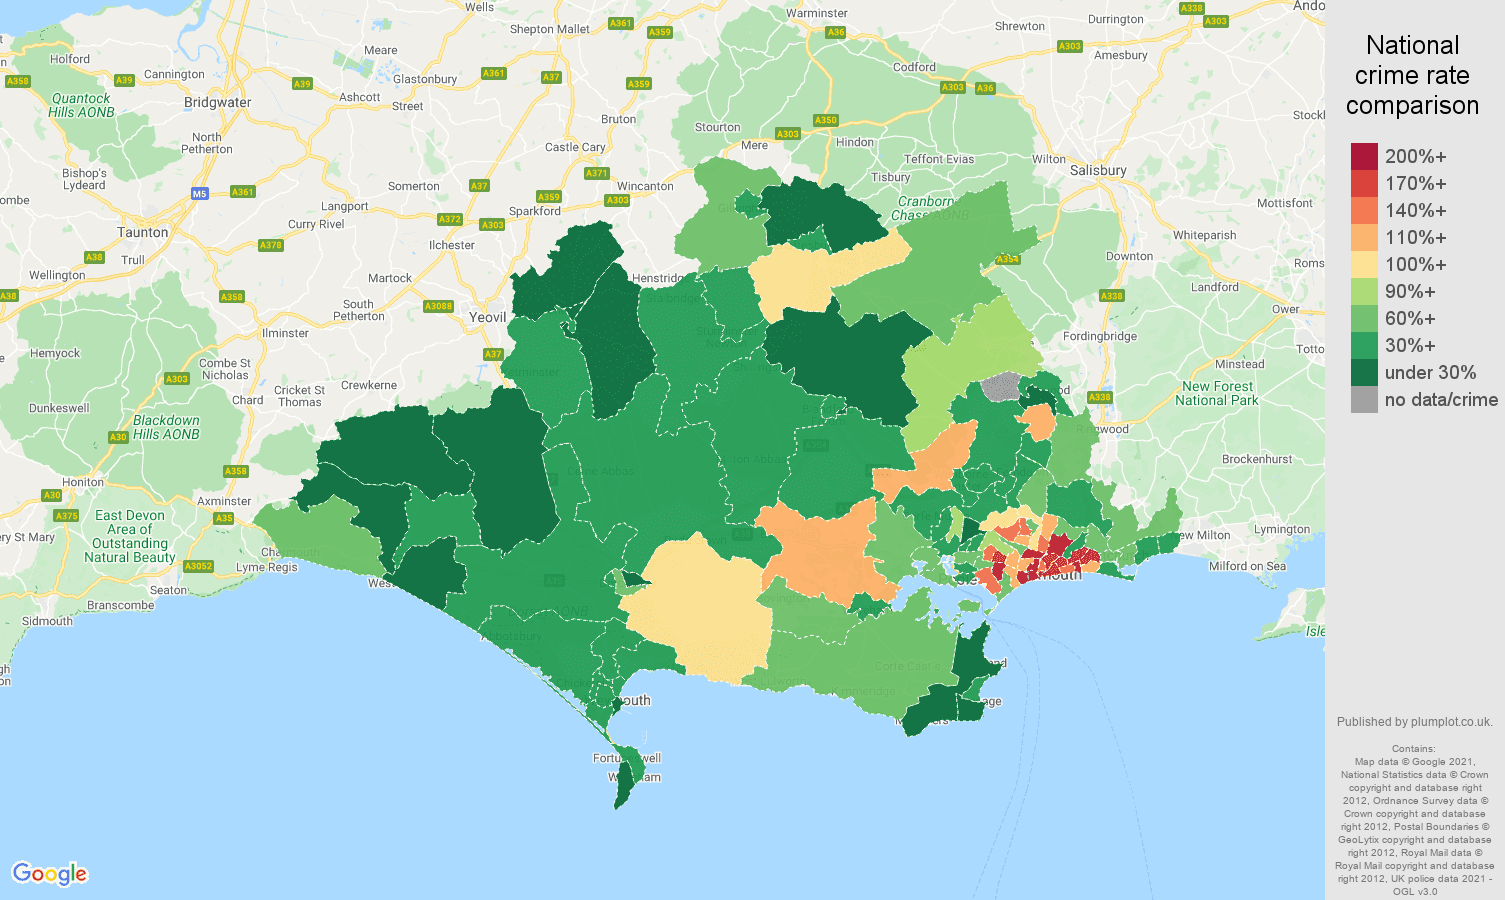 Dorset vehicle crime rate comparison map